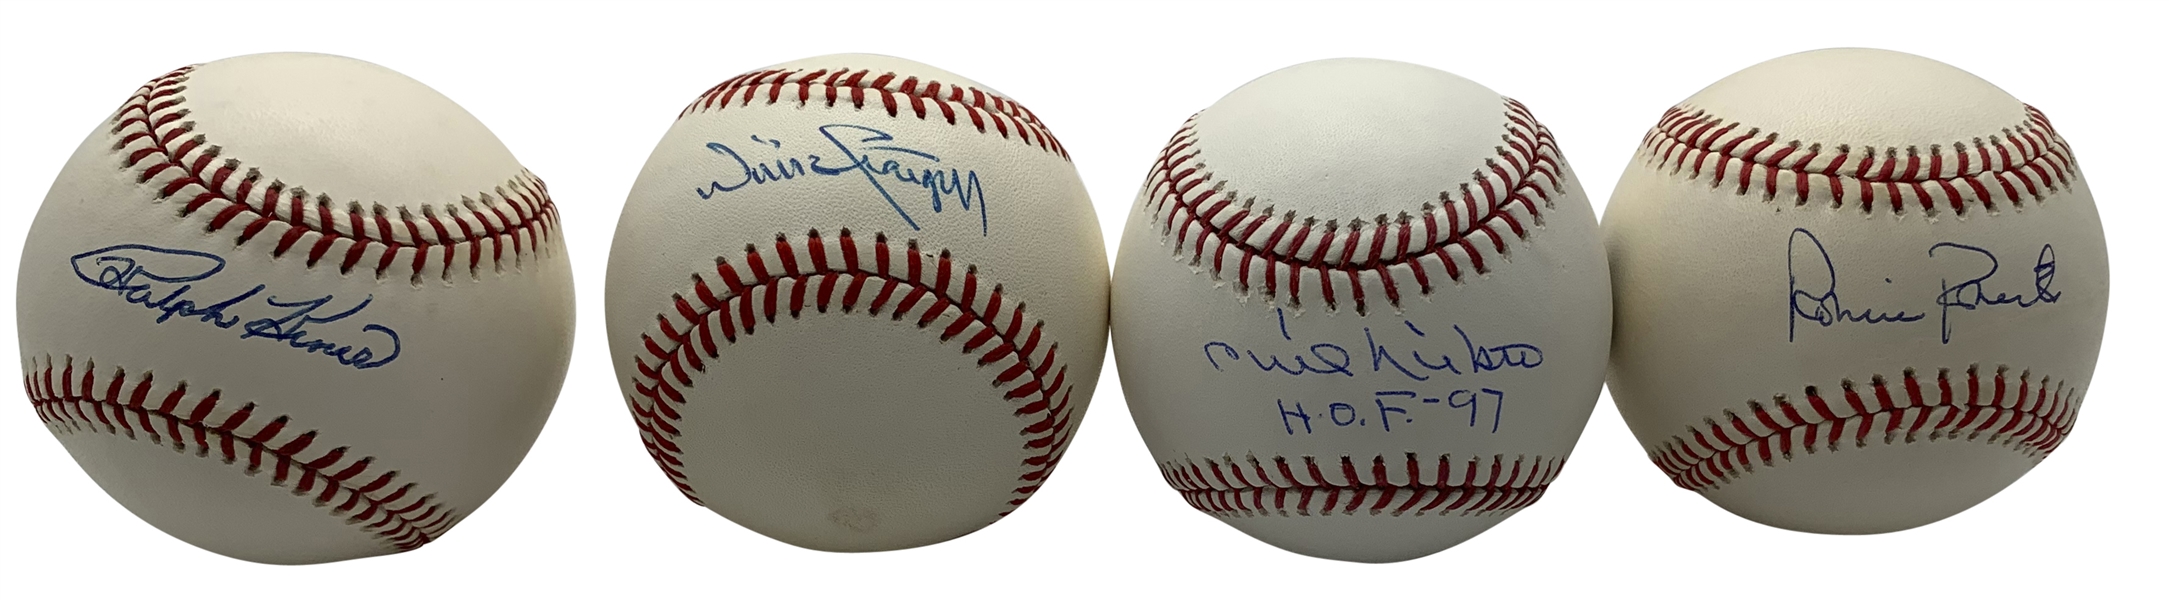 MLB Stars Lot of Four (4) Signed Baseballs w/ Kiner, Stargell, Niekro & Roberts (PSA/DNA & Steiner)